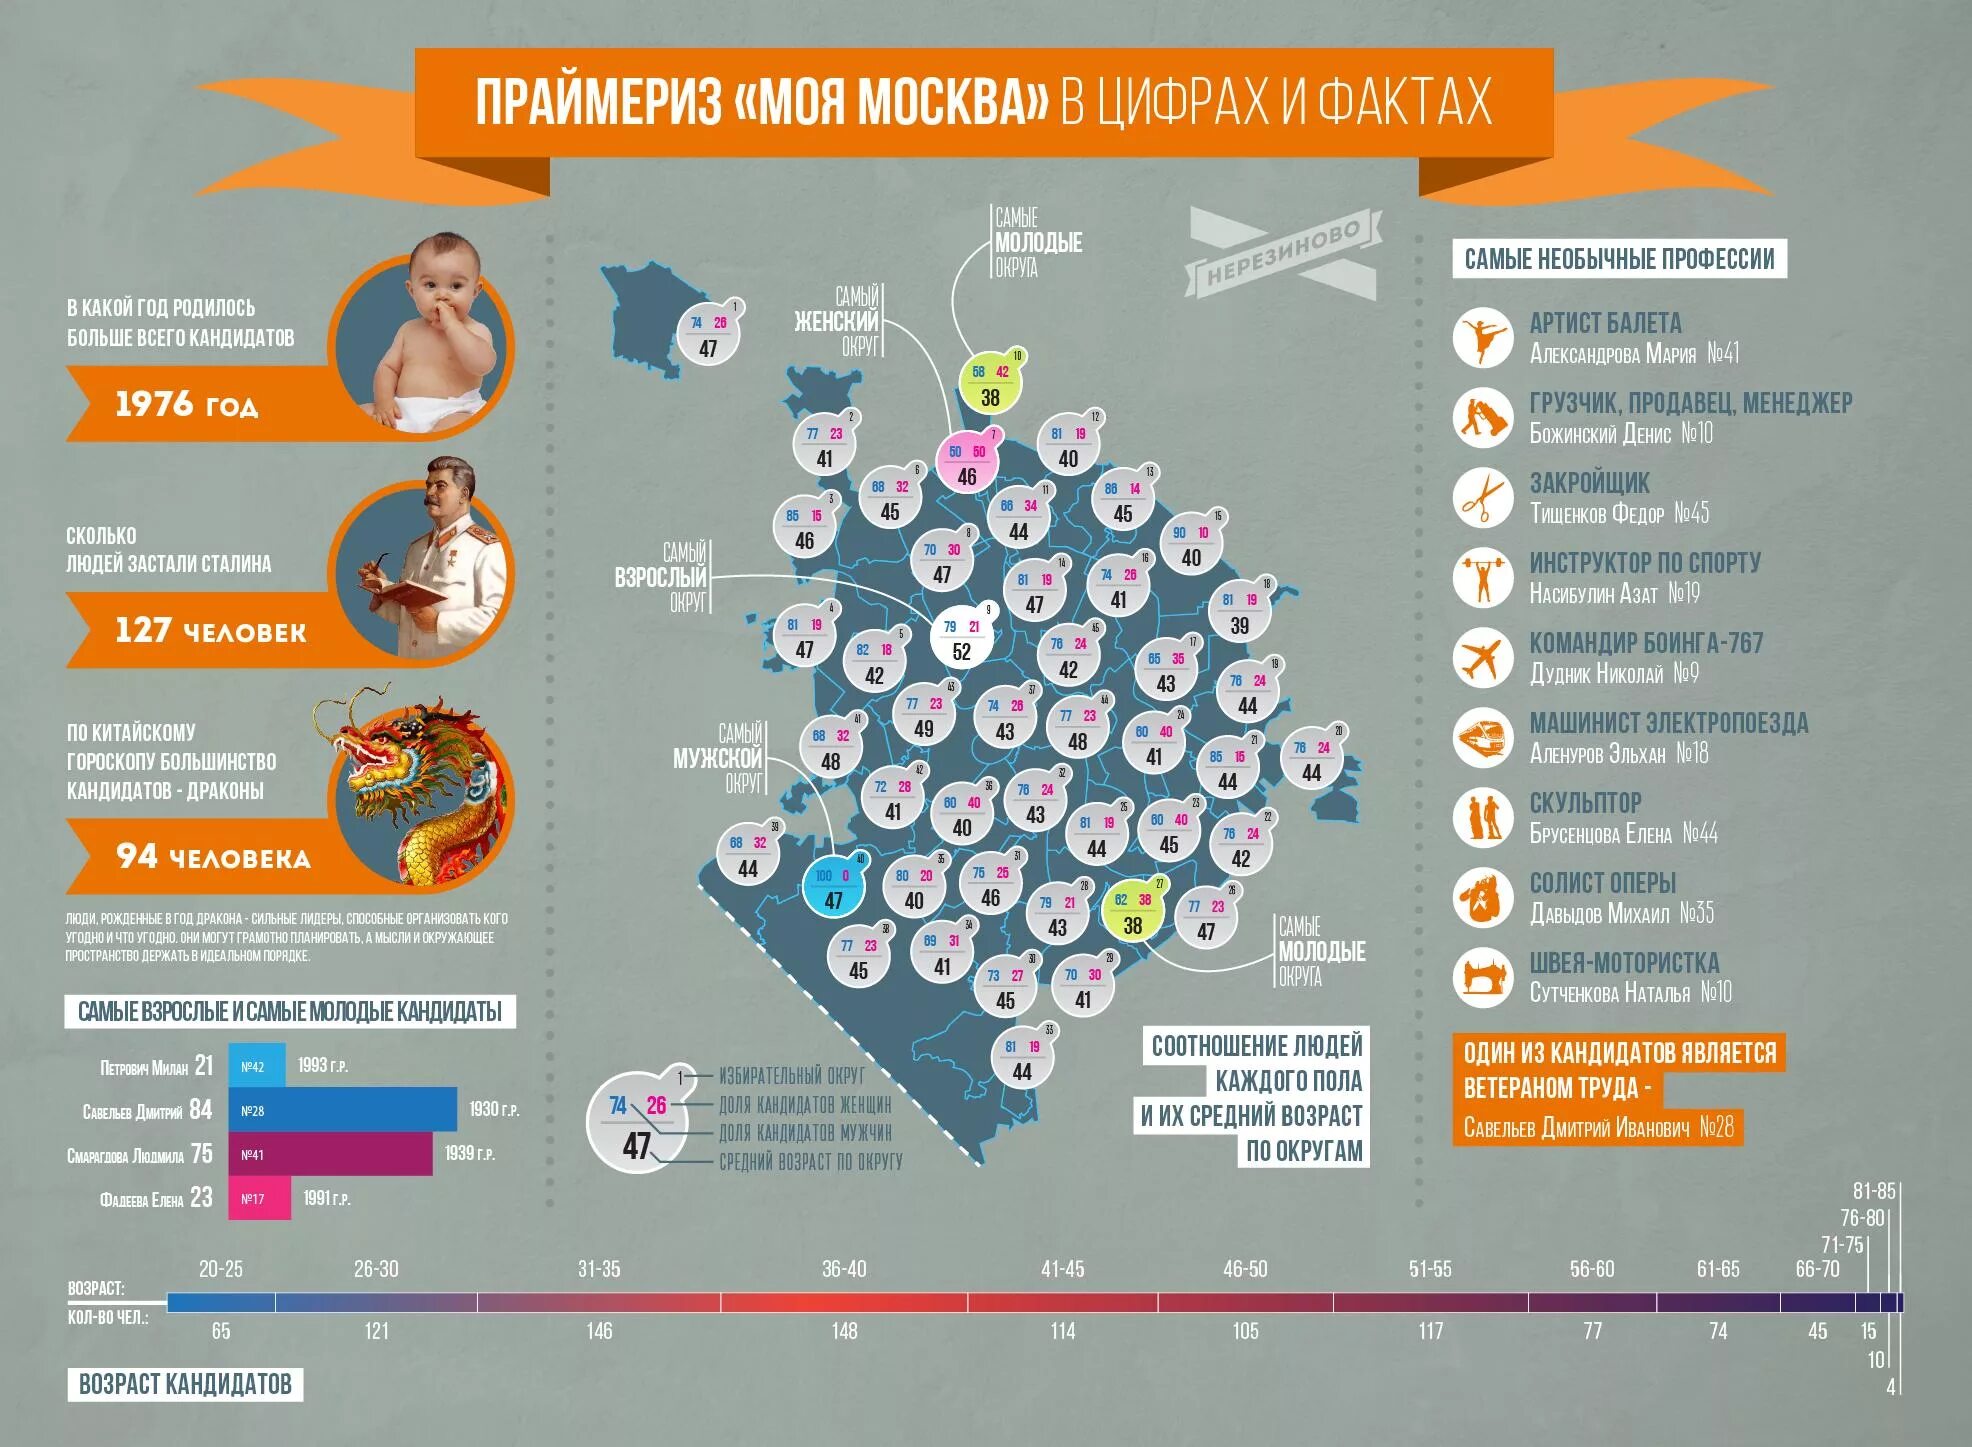 Интересная инфографика. Интересная статистика о Москве. Инфографика цифры и факты. Интересные факты в инфографике. Утопая в цифрах